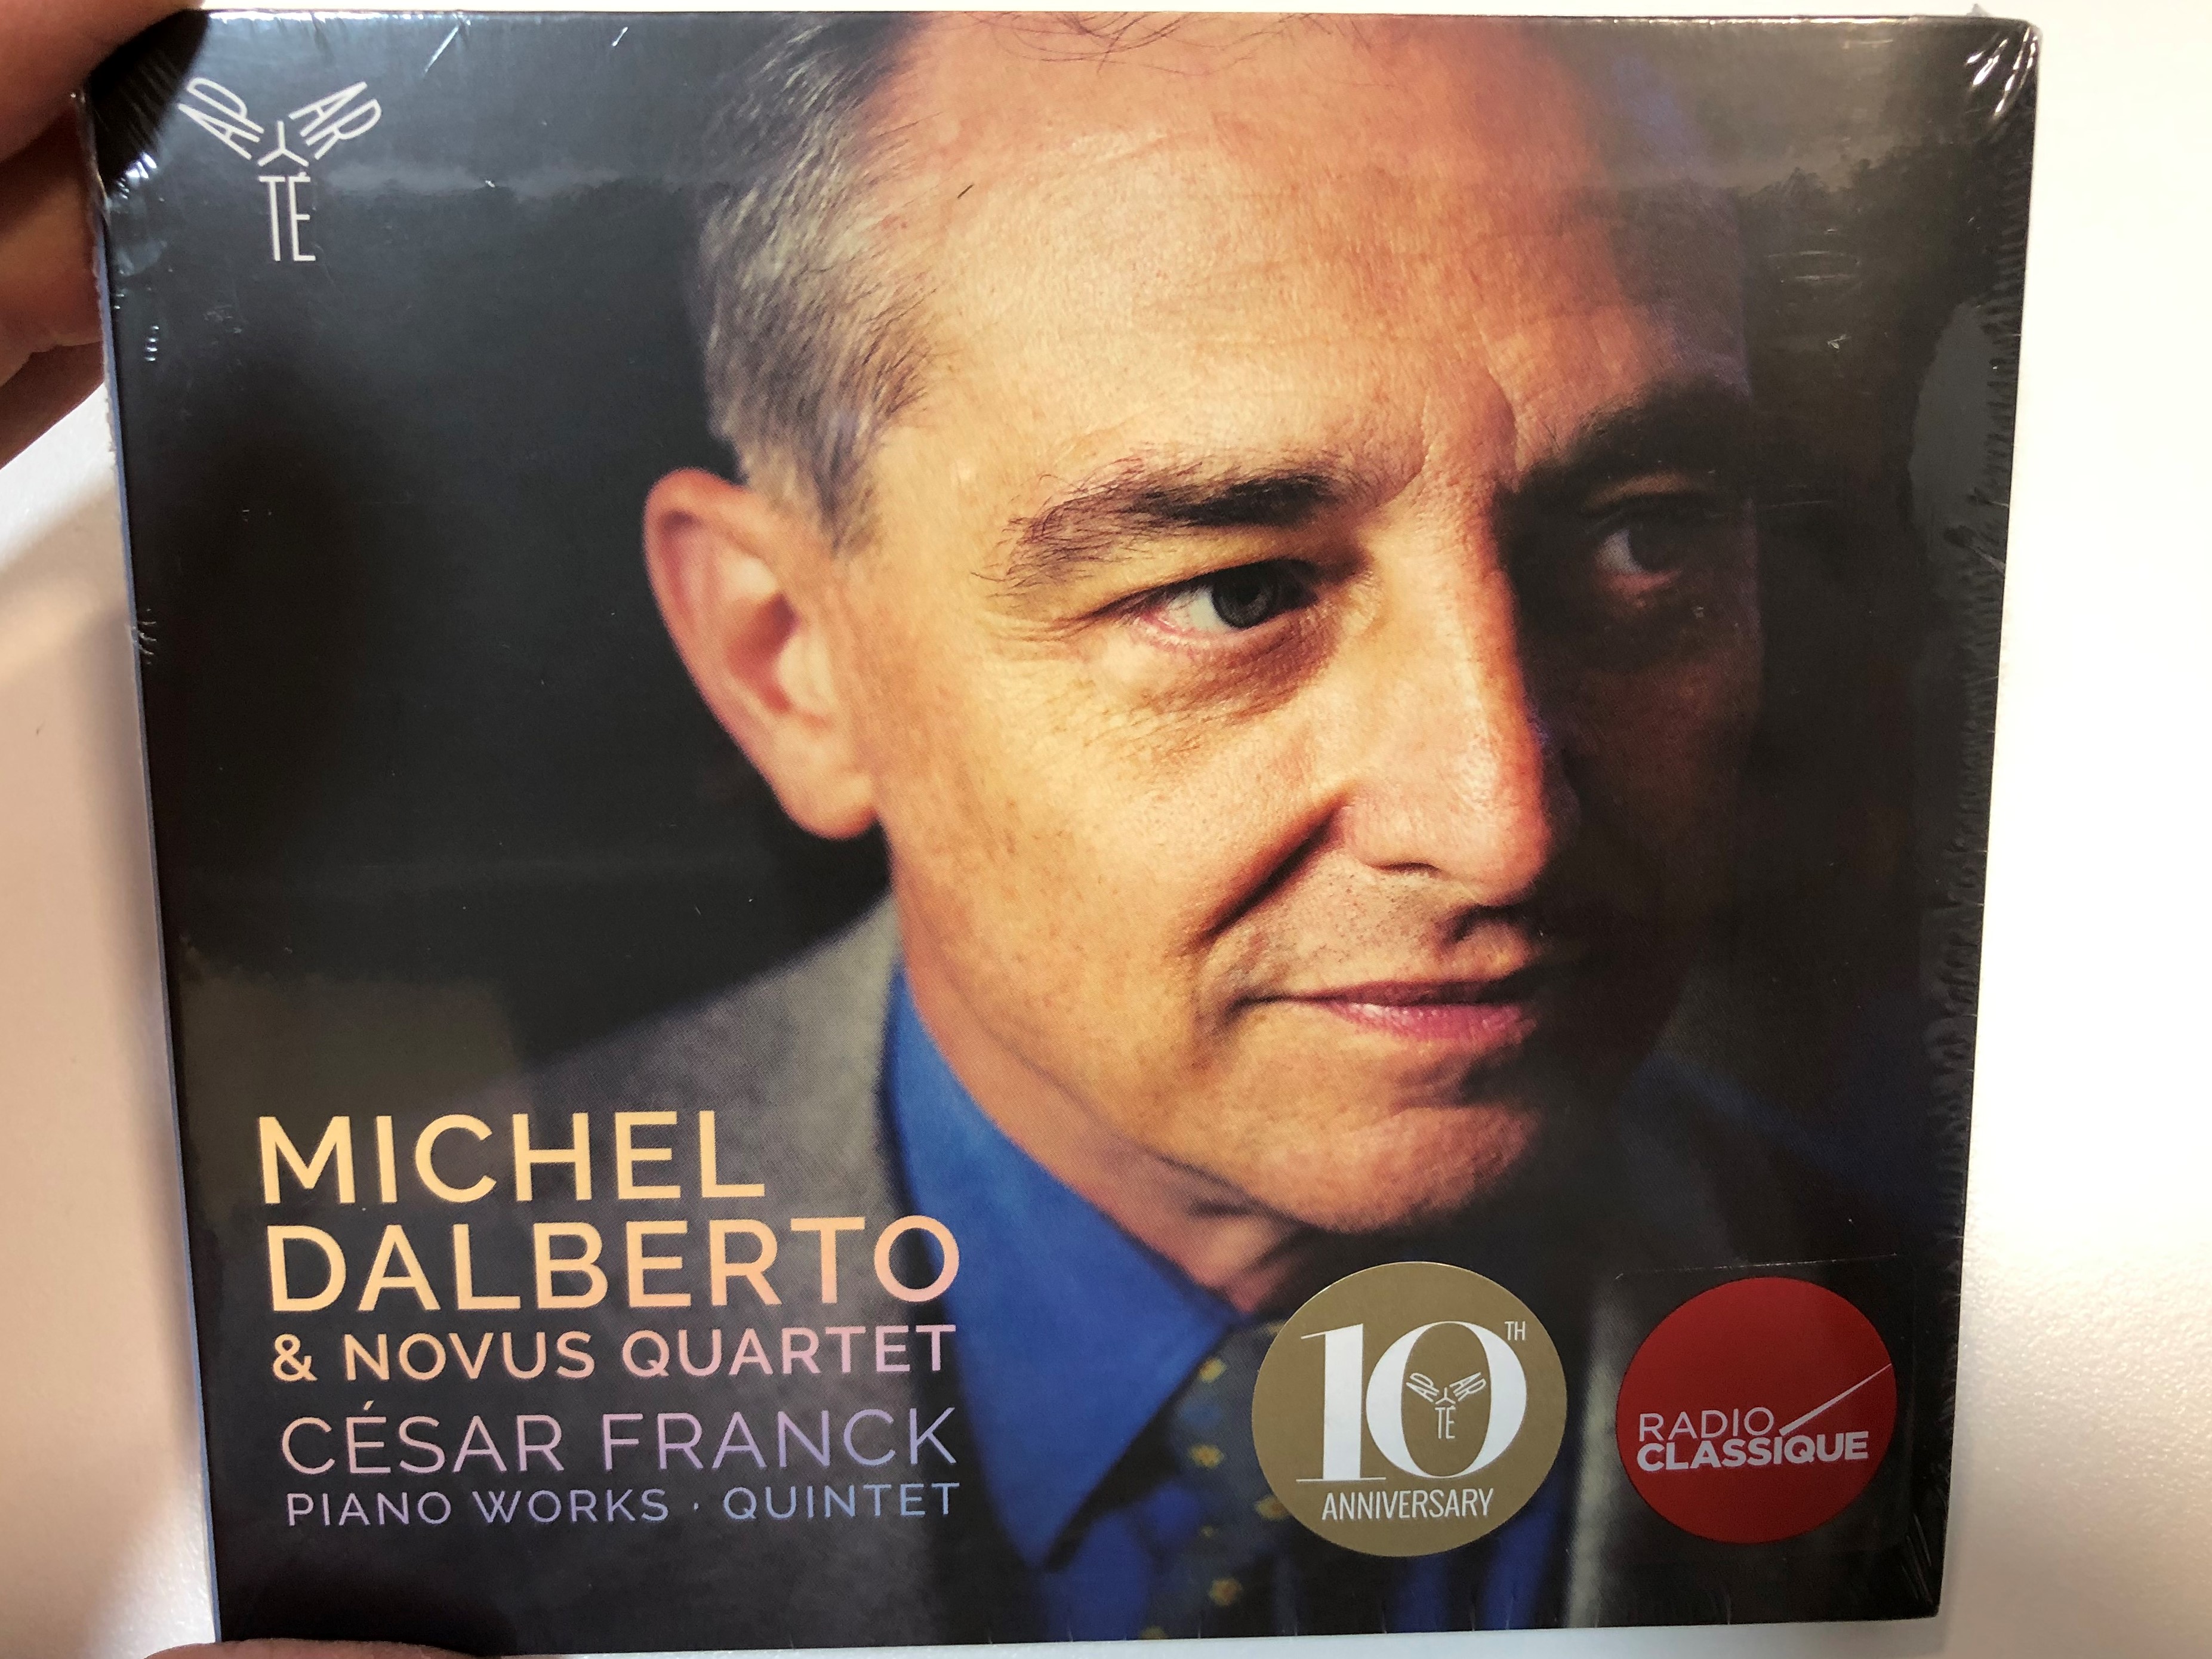 michel-dalberto-novus-quartet-c-sar-franck-piano-works-quintet-apart-audio-cd-2019-ap203-1-.jpg